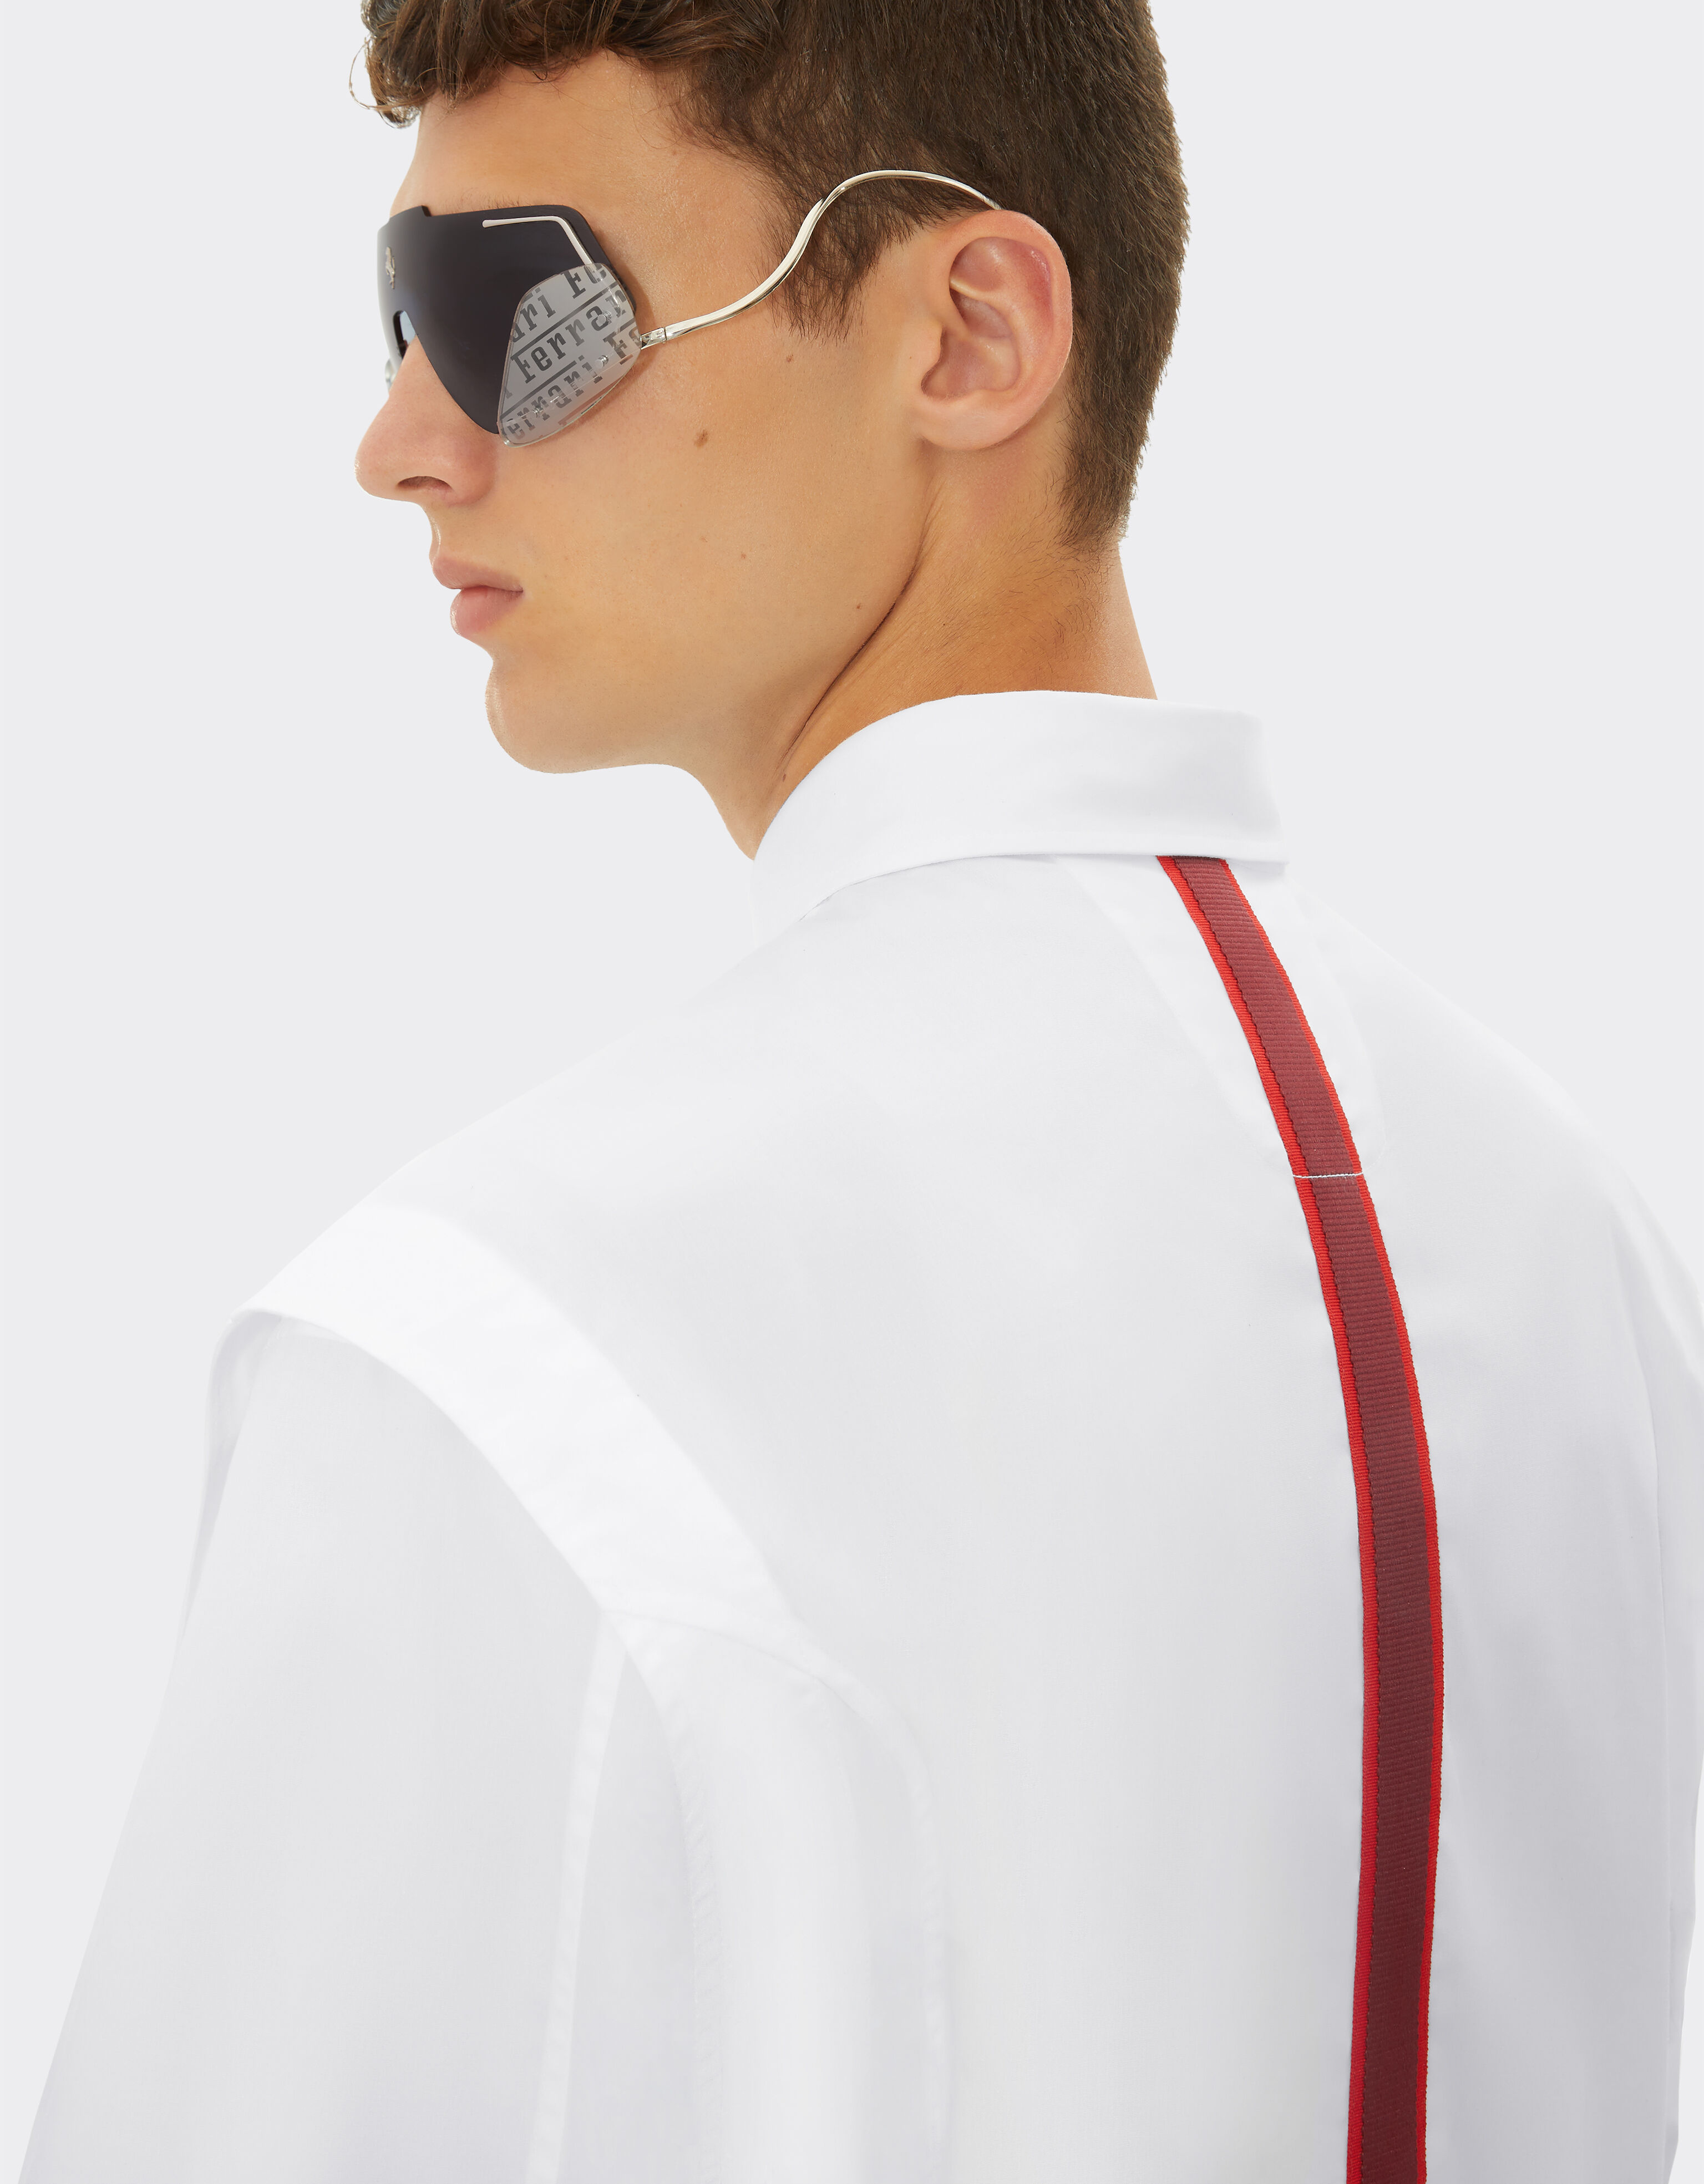 Ferrari Camisa de algodón con cinta de grogrén 3D Blanco óptico 48315f